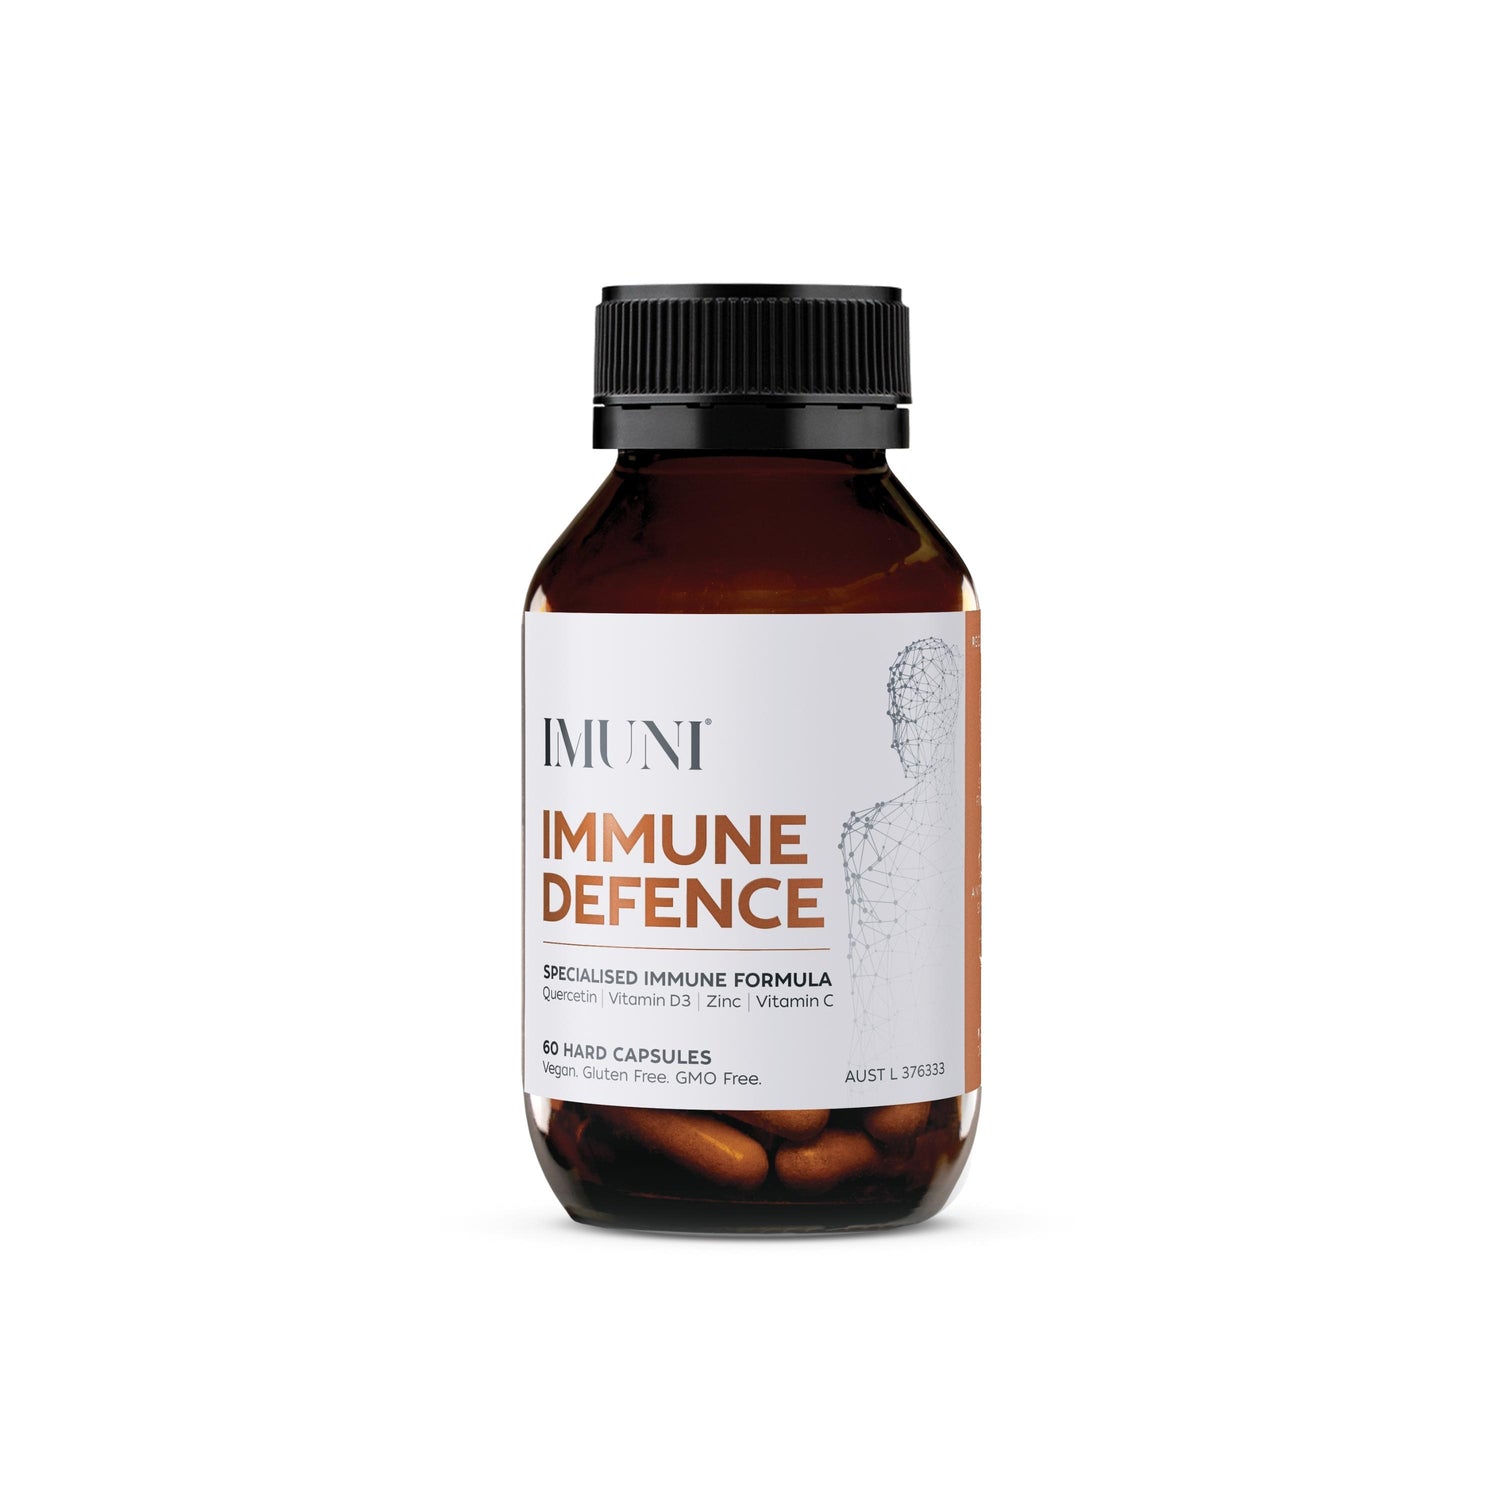 IMUNI Immune Defence - 60c